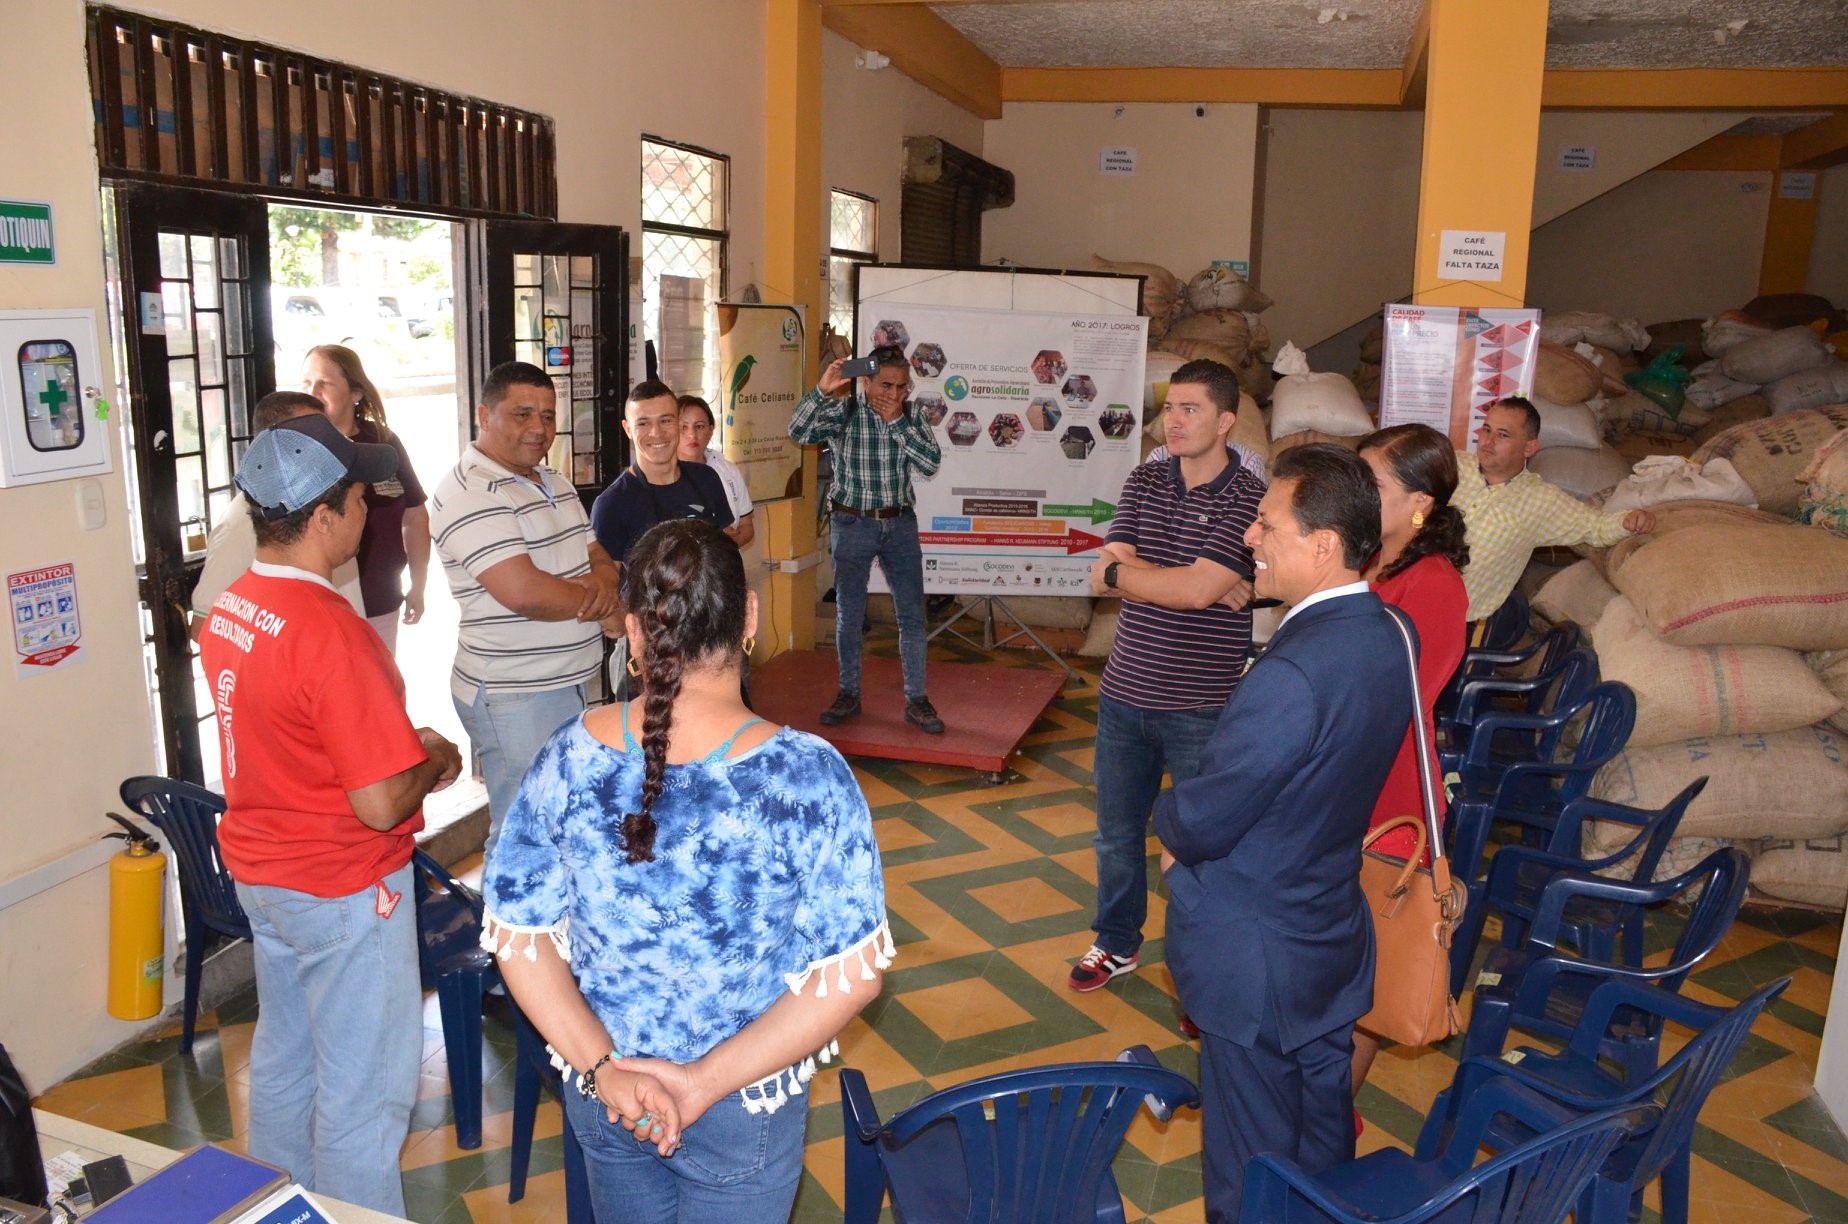 Fue así como se agendo la primera visita del alcalde de La Arena Piura Perú a La Celia Risaralda Colombia donde se trazaron unas iniciativas de desarrollo cultural y de un proyecto sobre el tratamiento de aguas residuales.